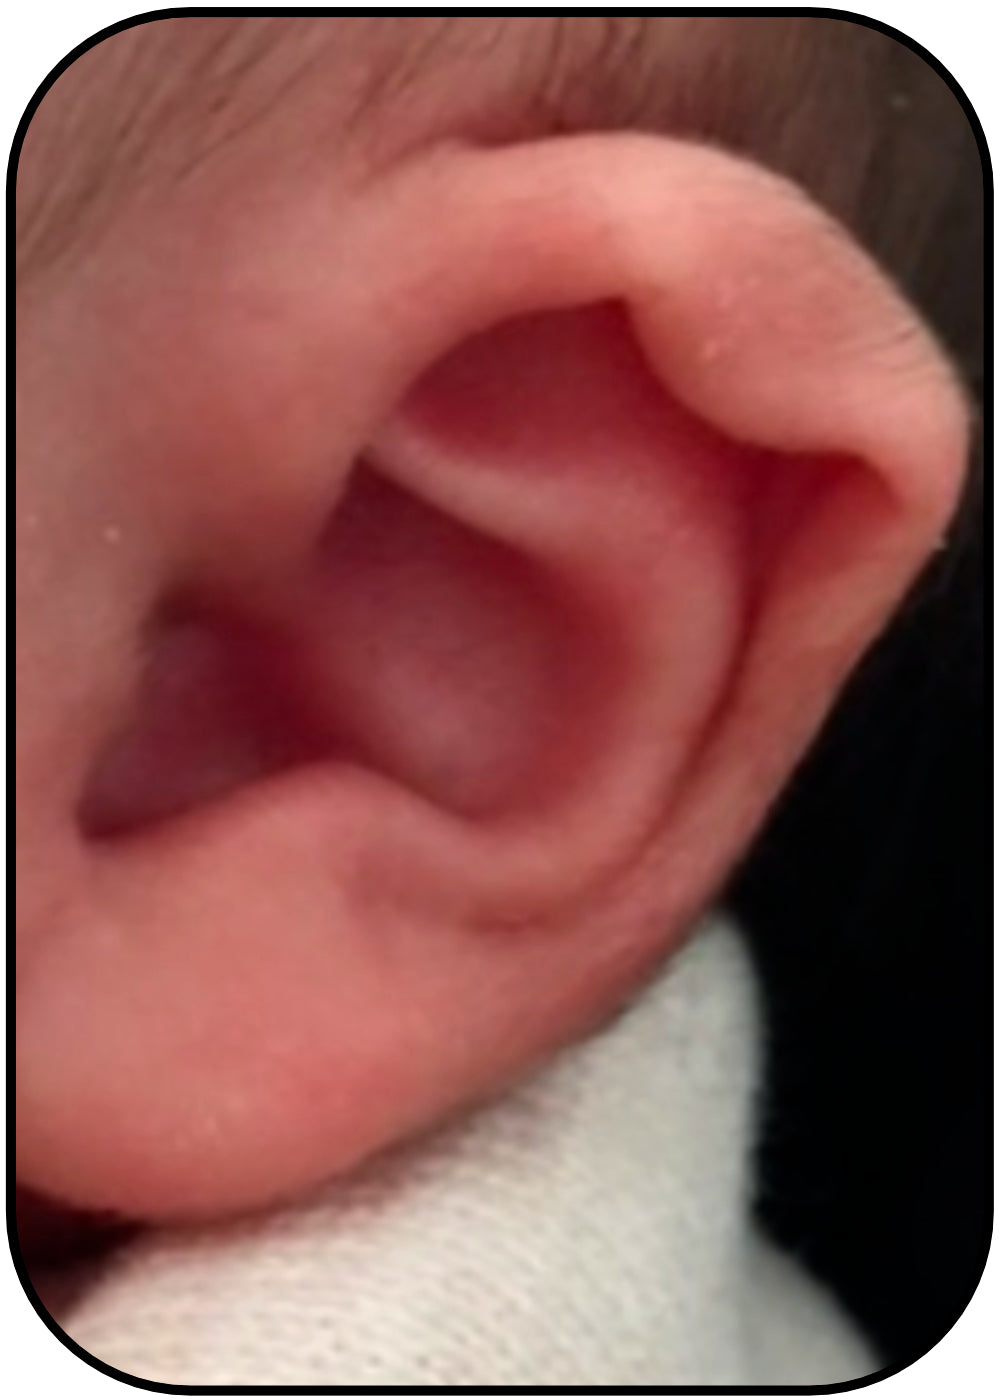 bend in babies ear